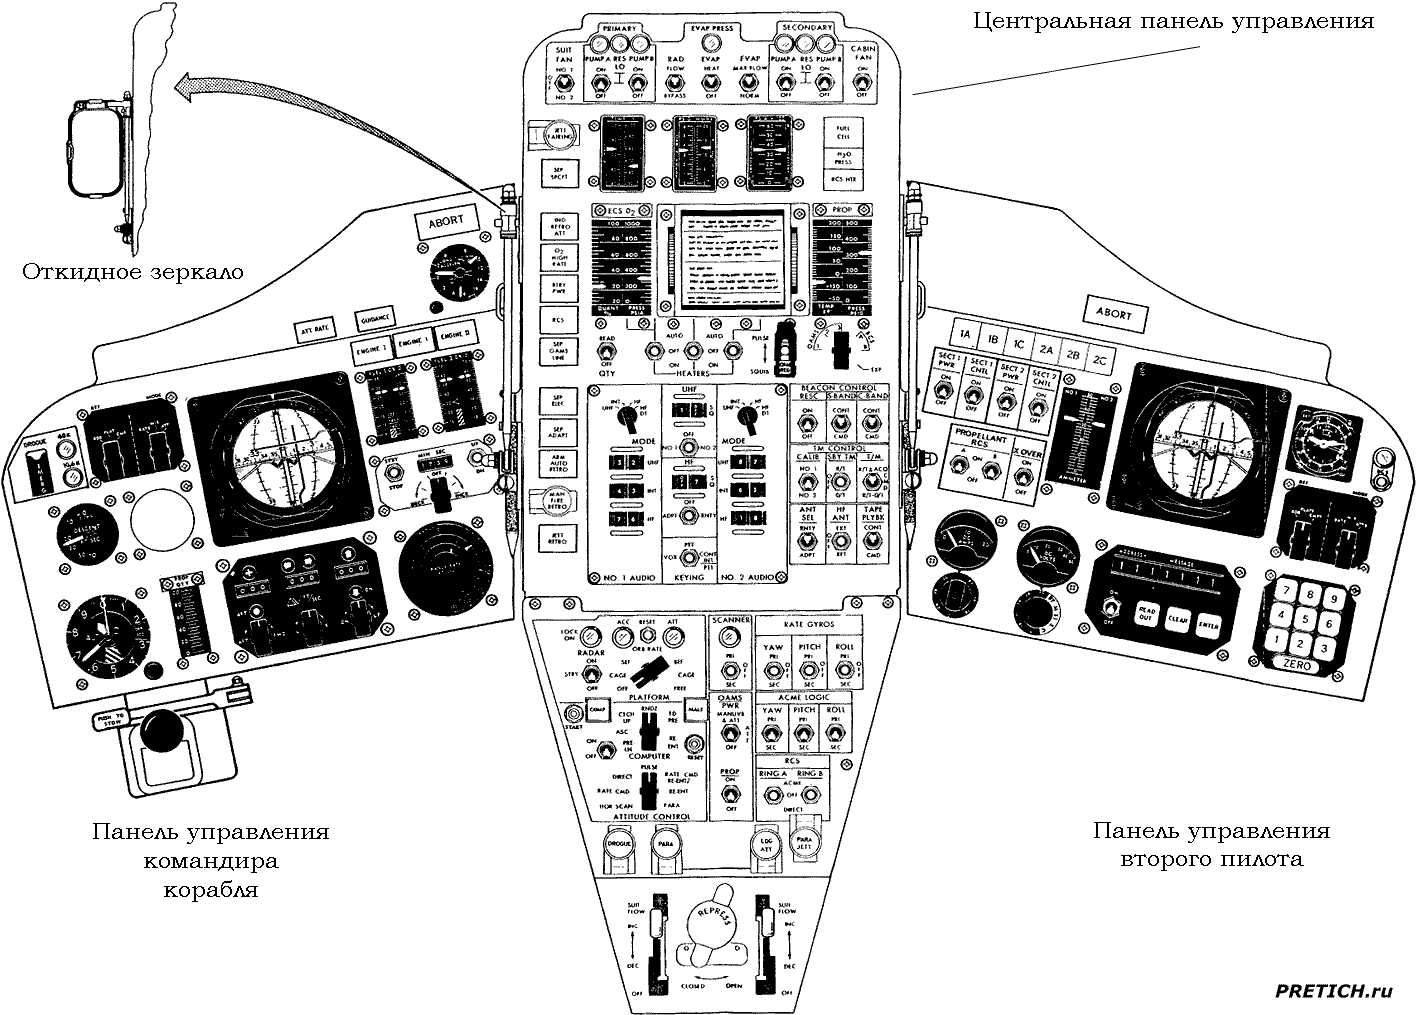 Джеминай, панель управления космическим кораблем